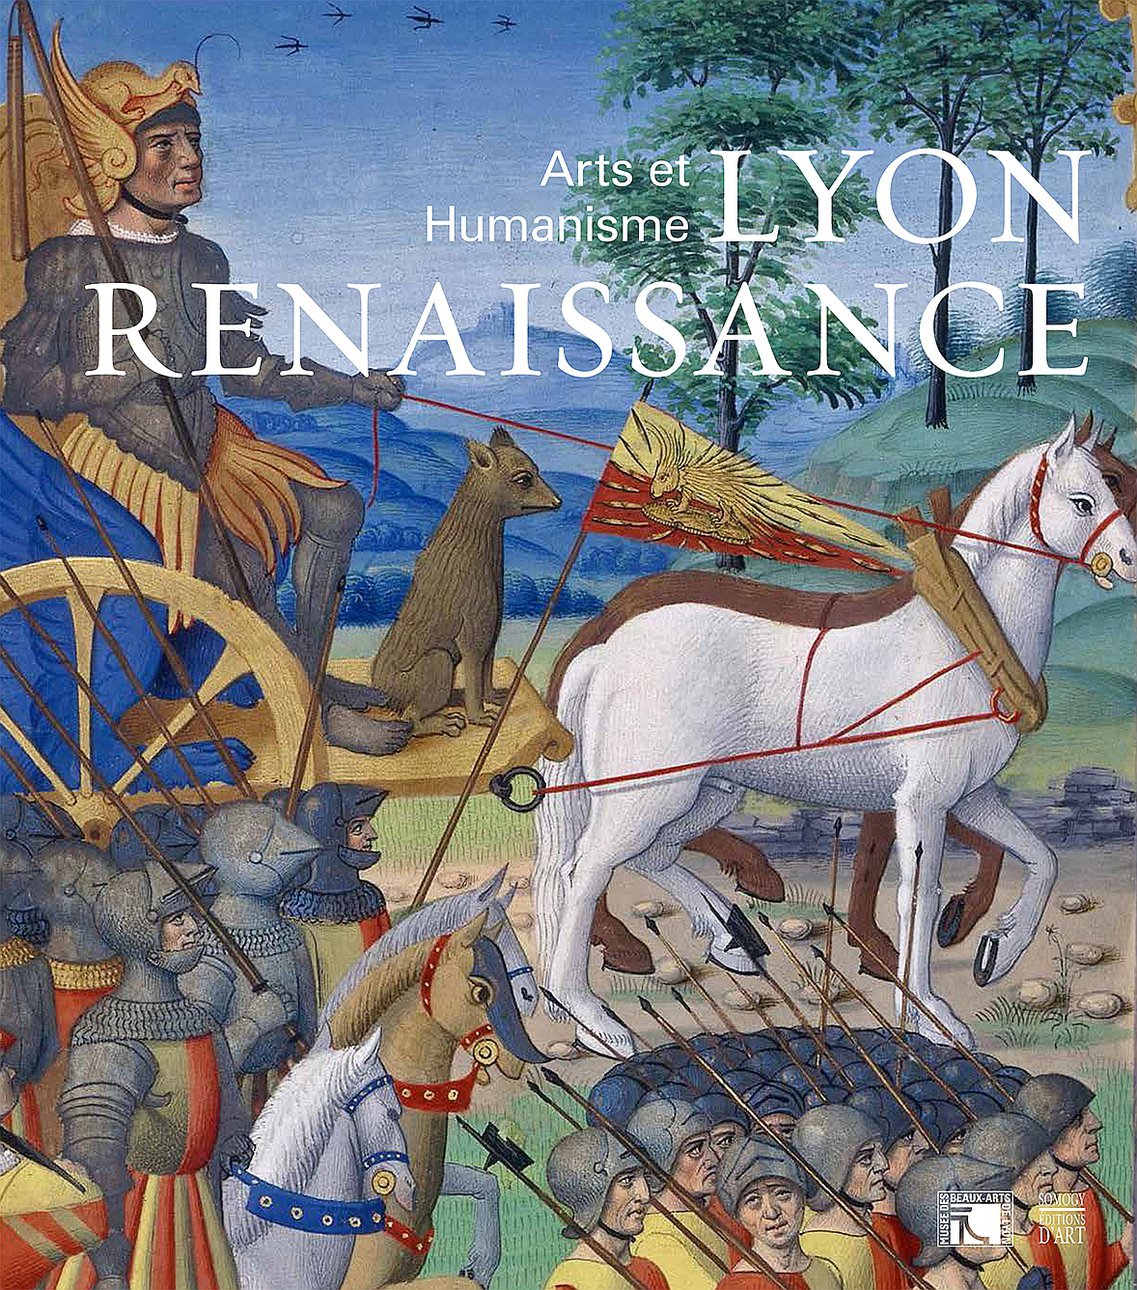 Sylvie Ramond, ed. / Lyon Renaissance: Arts et Humanisme. Somogy Editions d’Art; Musée des Beaux-Arts, Lyons. 344 с. €42 (мягкая обложка). На французском языке